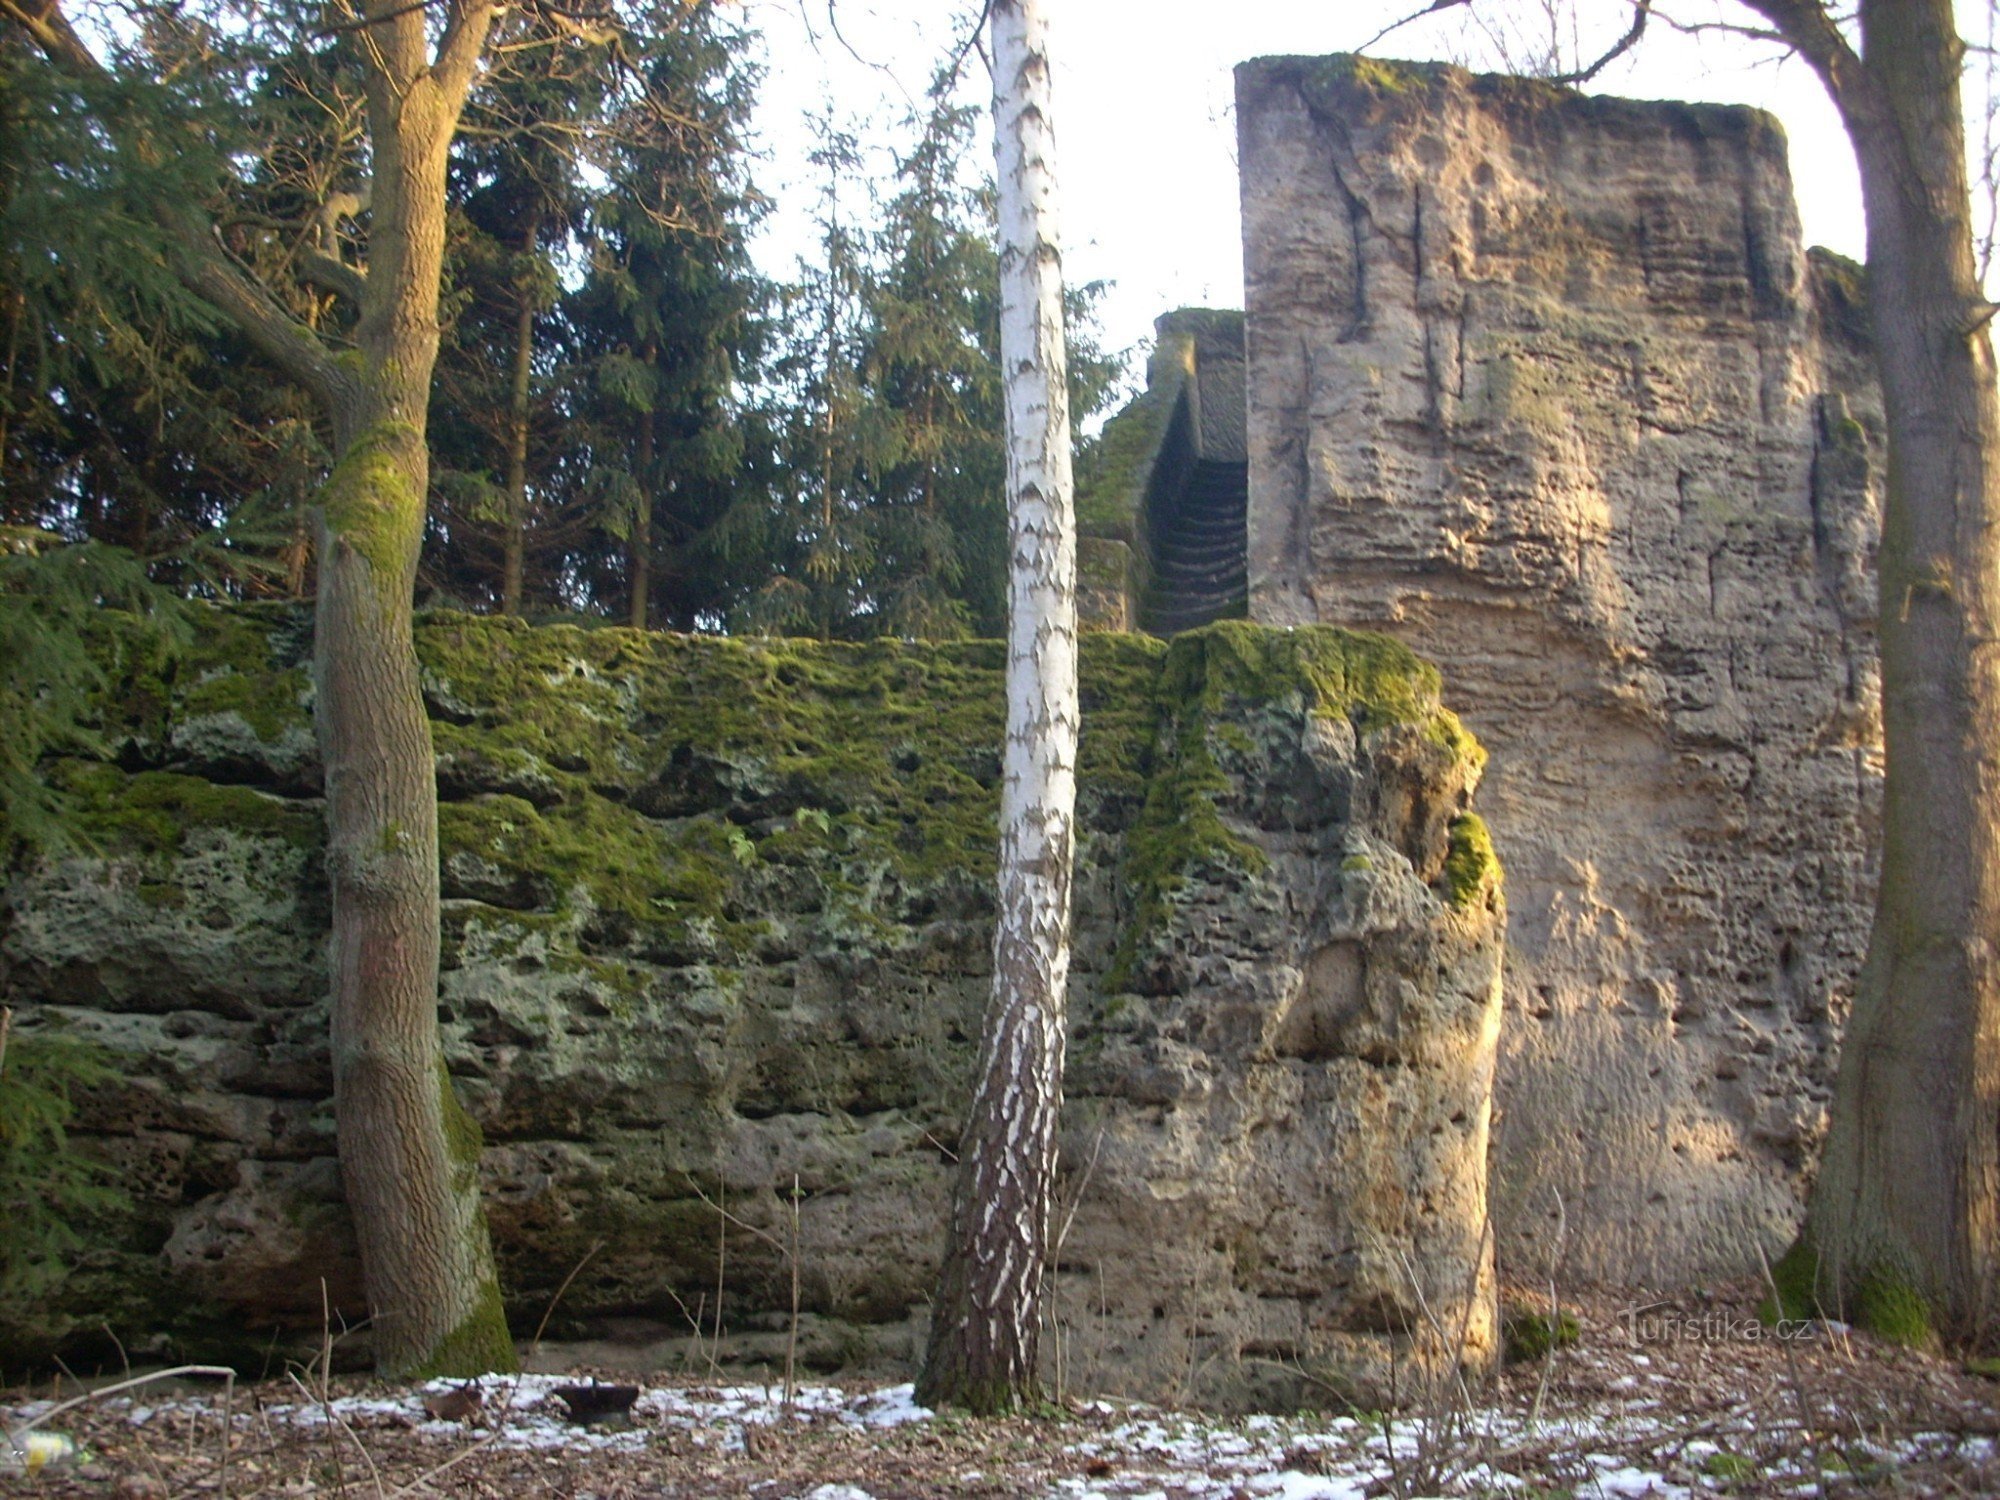 Jiljov rock fortress